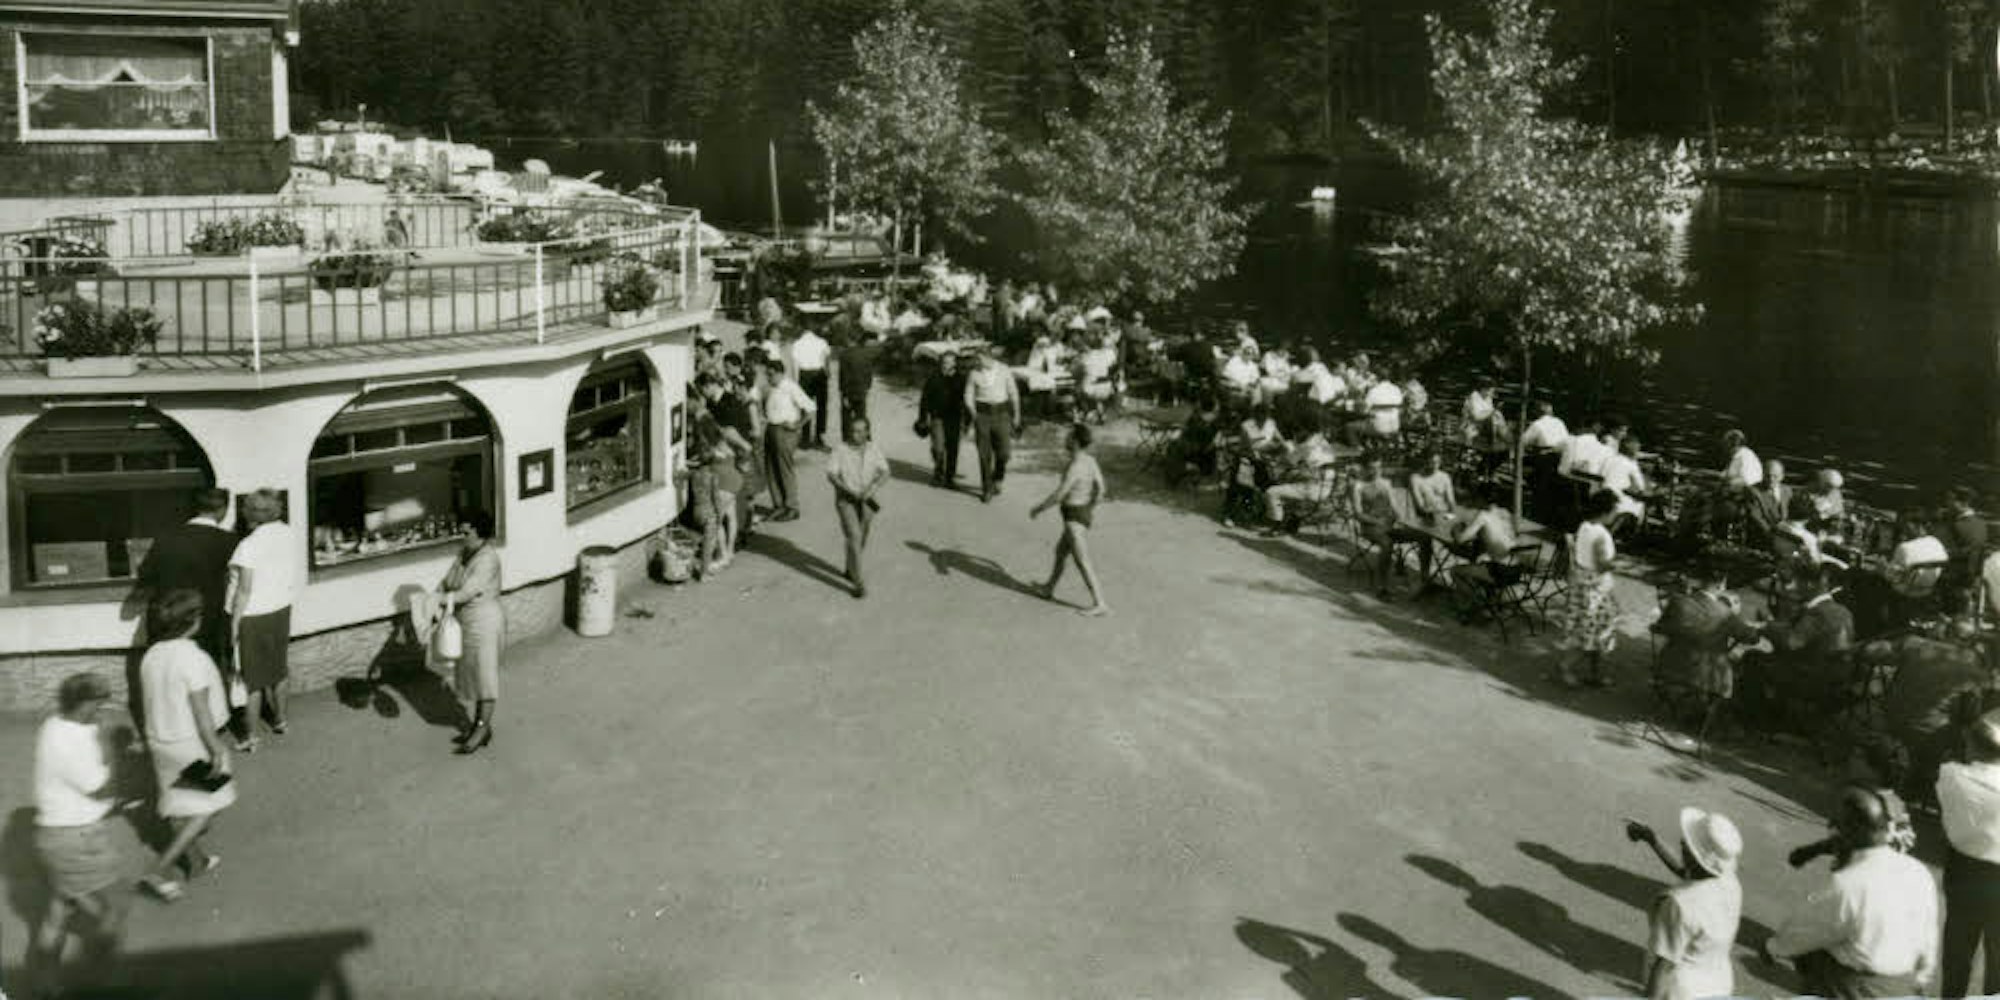 Der Ausflugsbetrieb florierte an der Diepentalsperre in den 50er-Jahren. Der Bergische Geschichtsverein recherchierte.